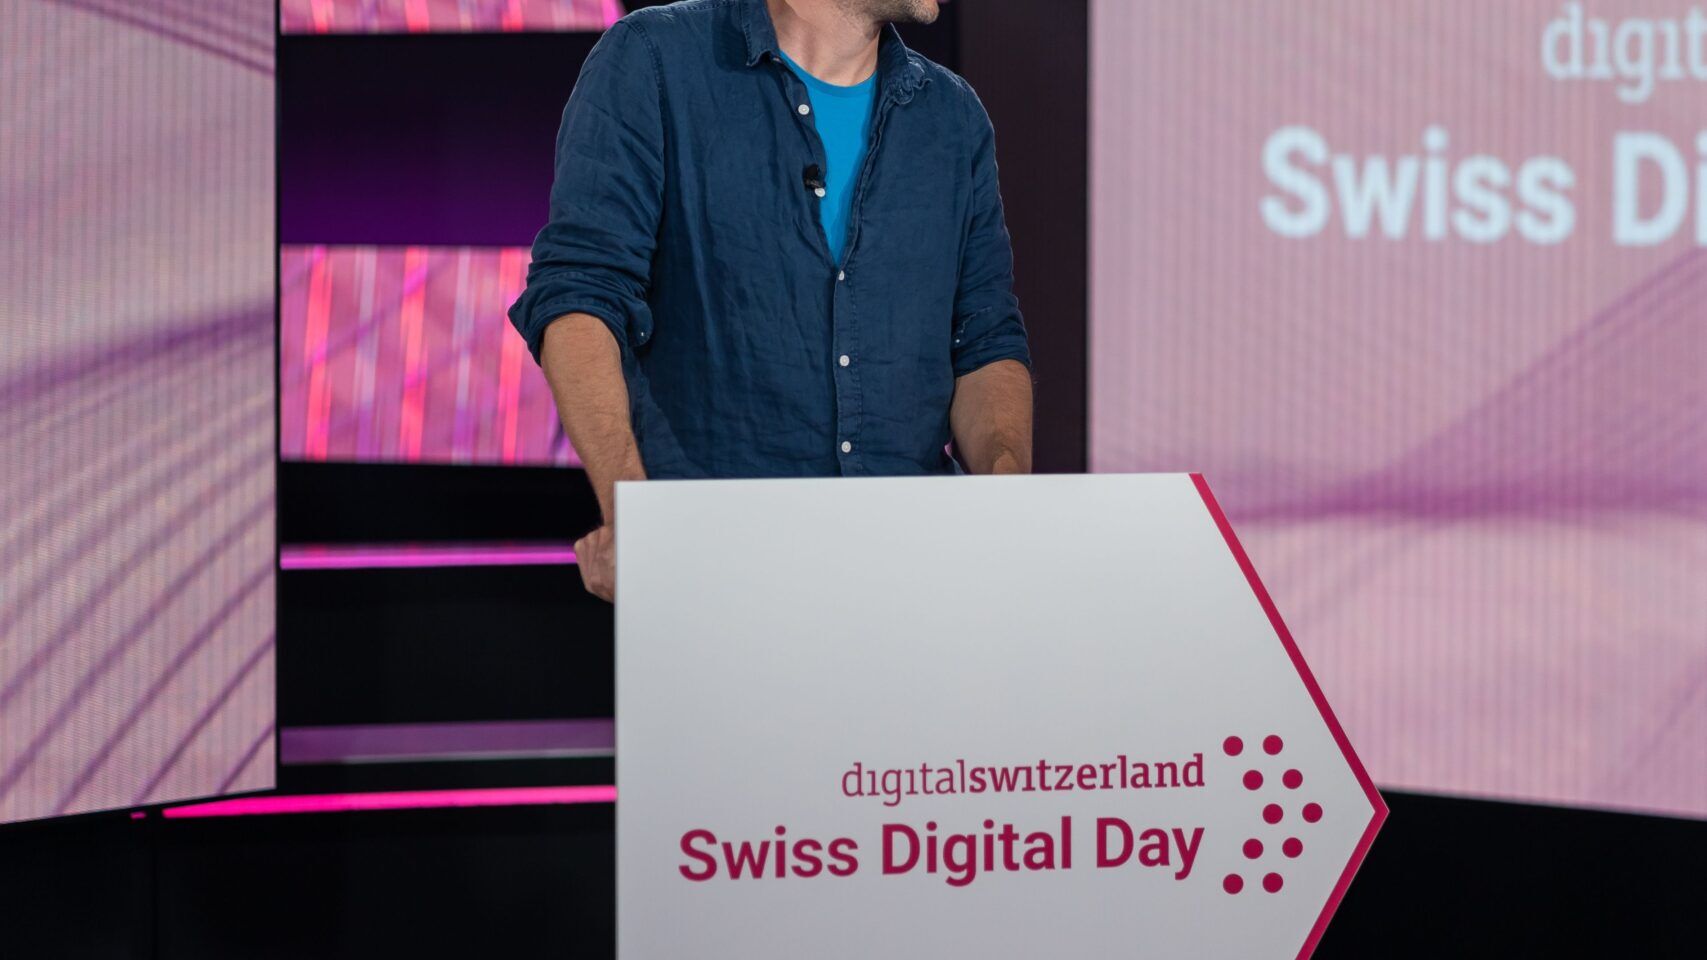 Un momento della versione online e televisiva della 'Giornata Digitale Svizzera' del 10 novembre 2021